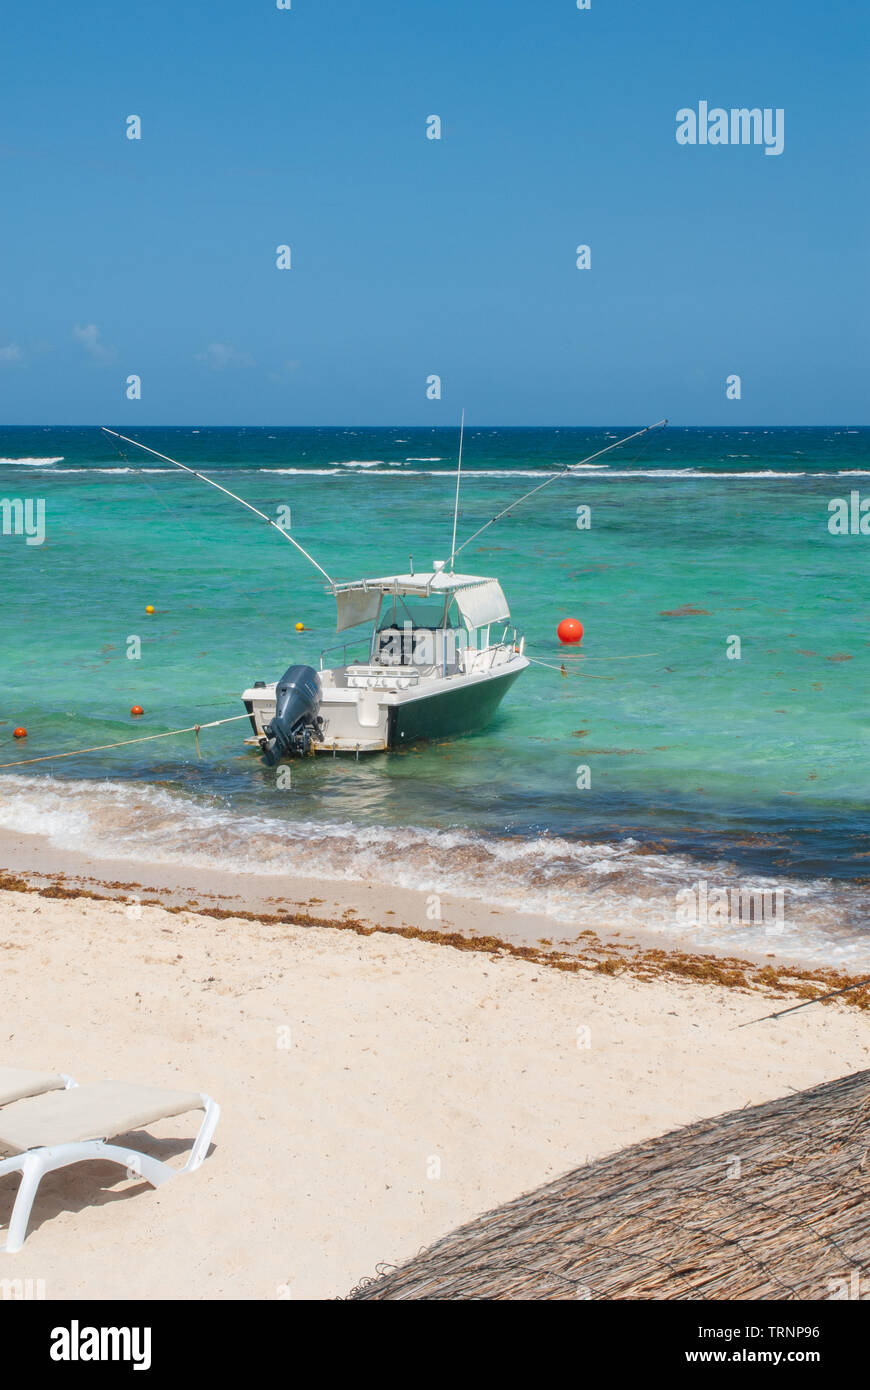 Fishing boat shot in Tulum, in the Mexican Yucatan peninsula Stock Photo